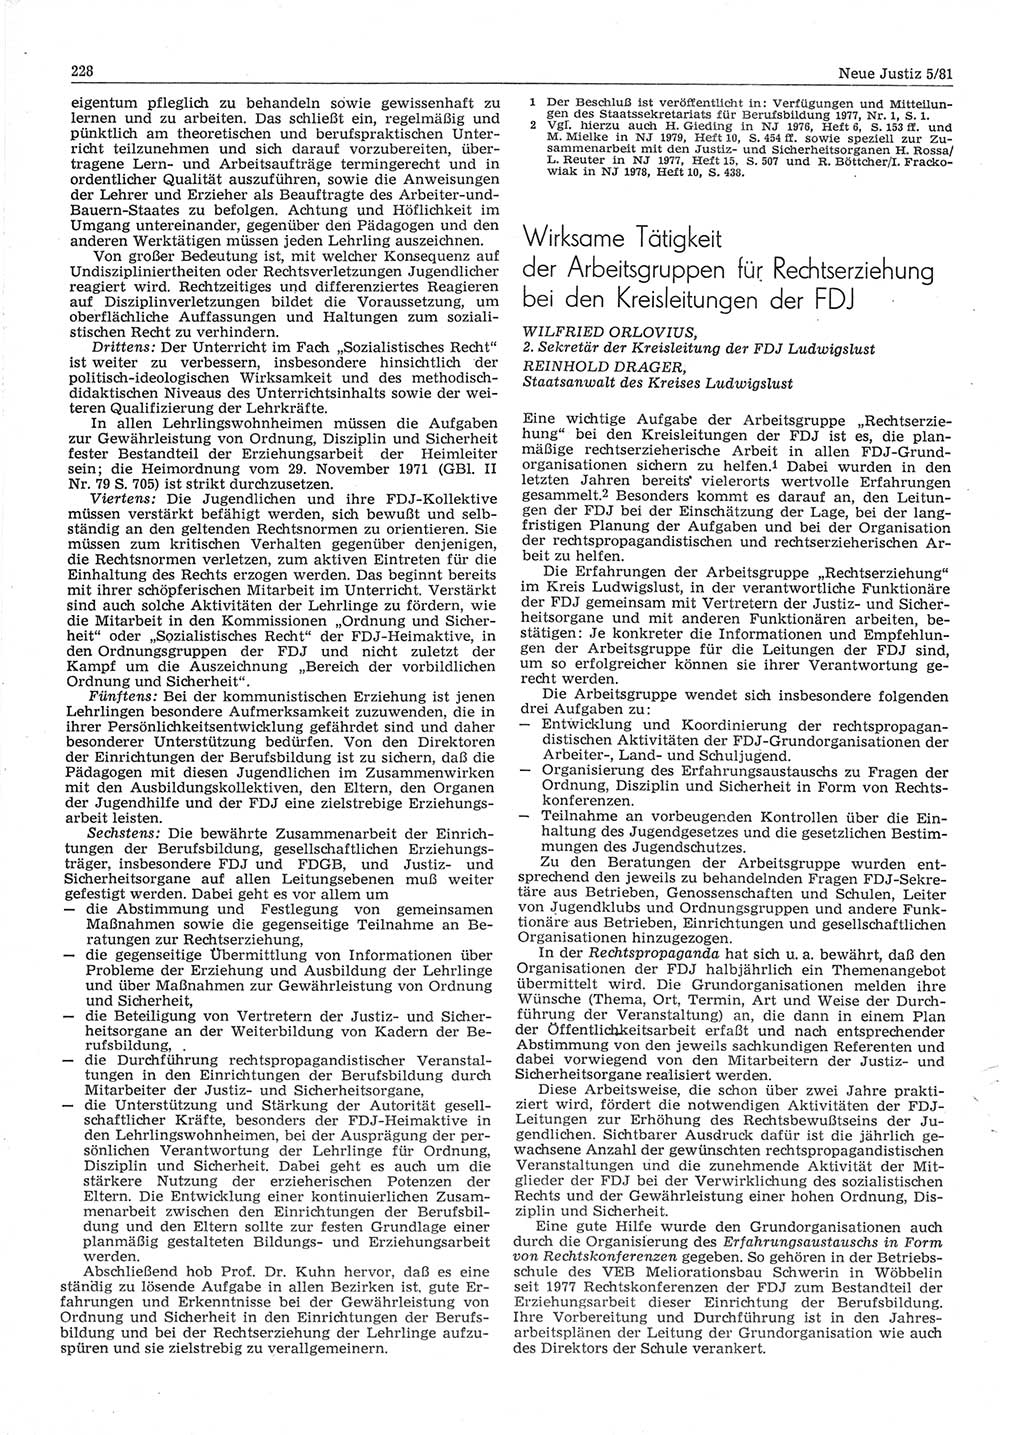 Neue Justiz (NJ), Zeitschrift für sozialistisches Recht und Gesetzlichkeit [Deutsche Demokratische Republik (DDR)], 35. Jahrgang 1981, Seite 228 (NJ DDR 1981, S. 228)